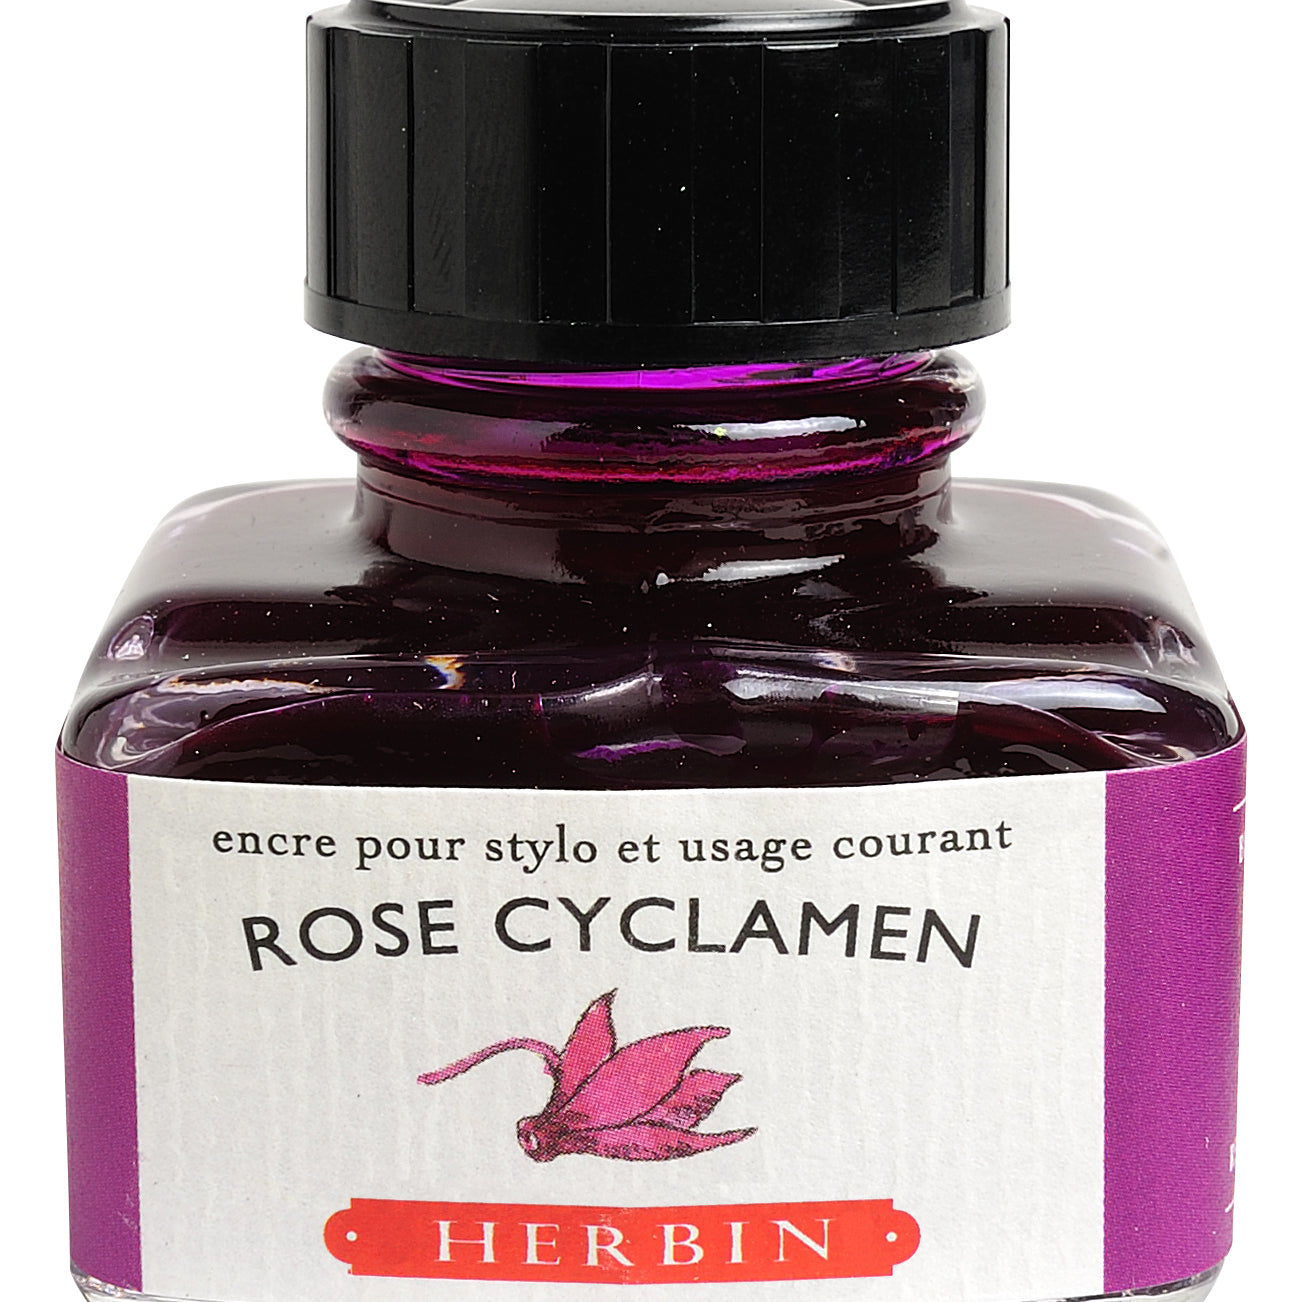 JACQUES HERBIN La Perle des Encres 30ml Rose Cyclamen Default Title